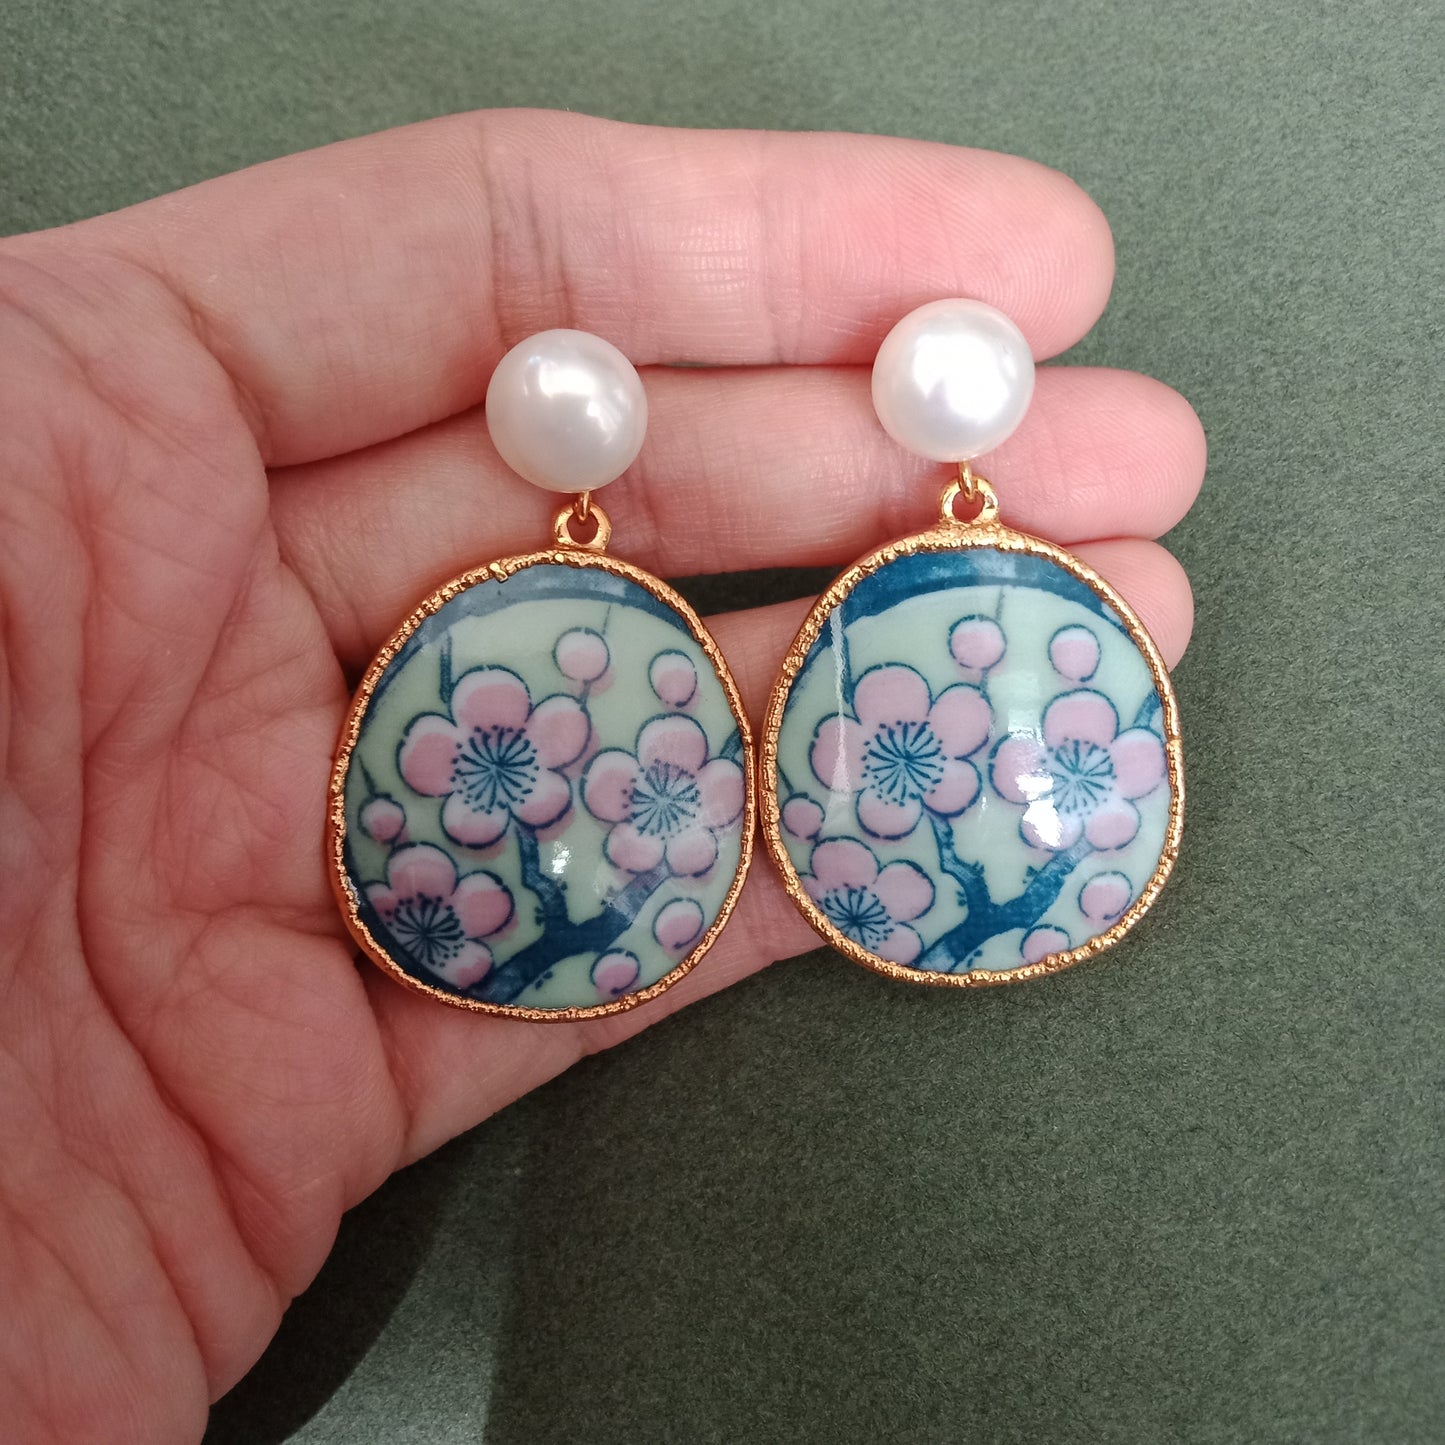 Cherry blossom porcelain earrings